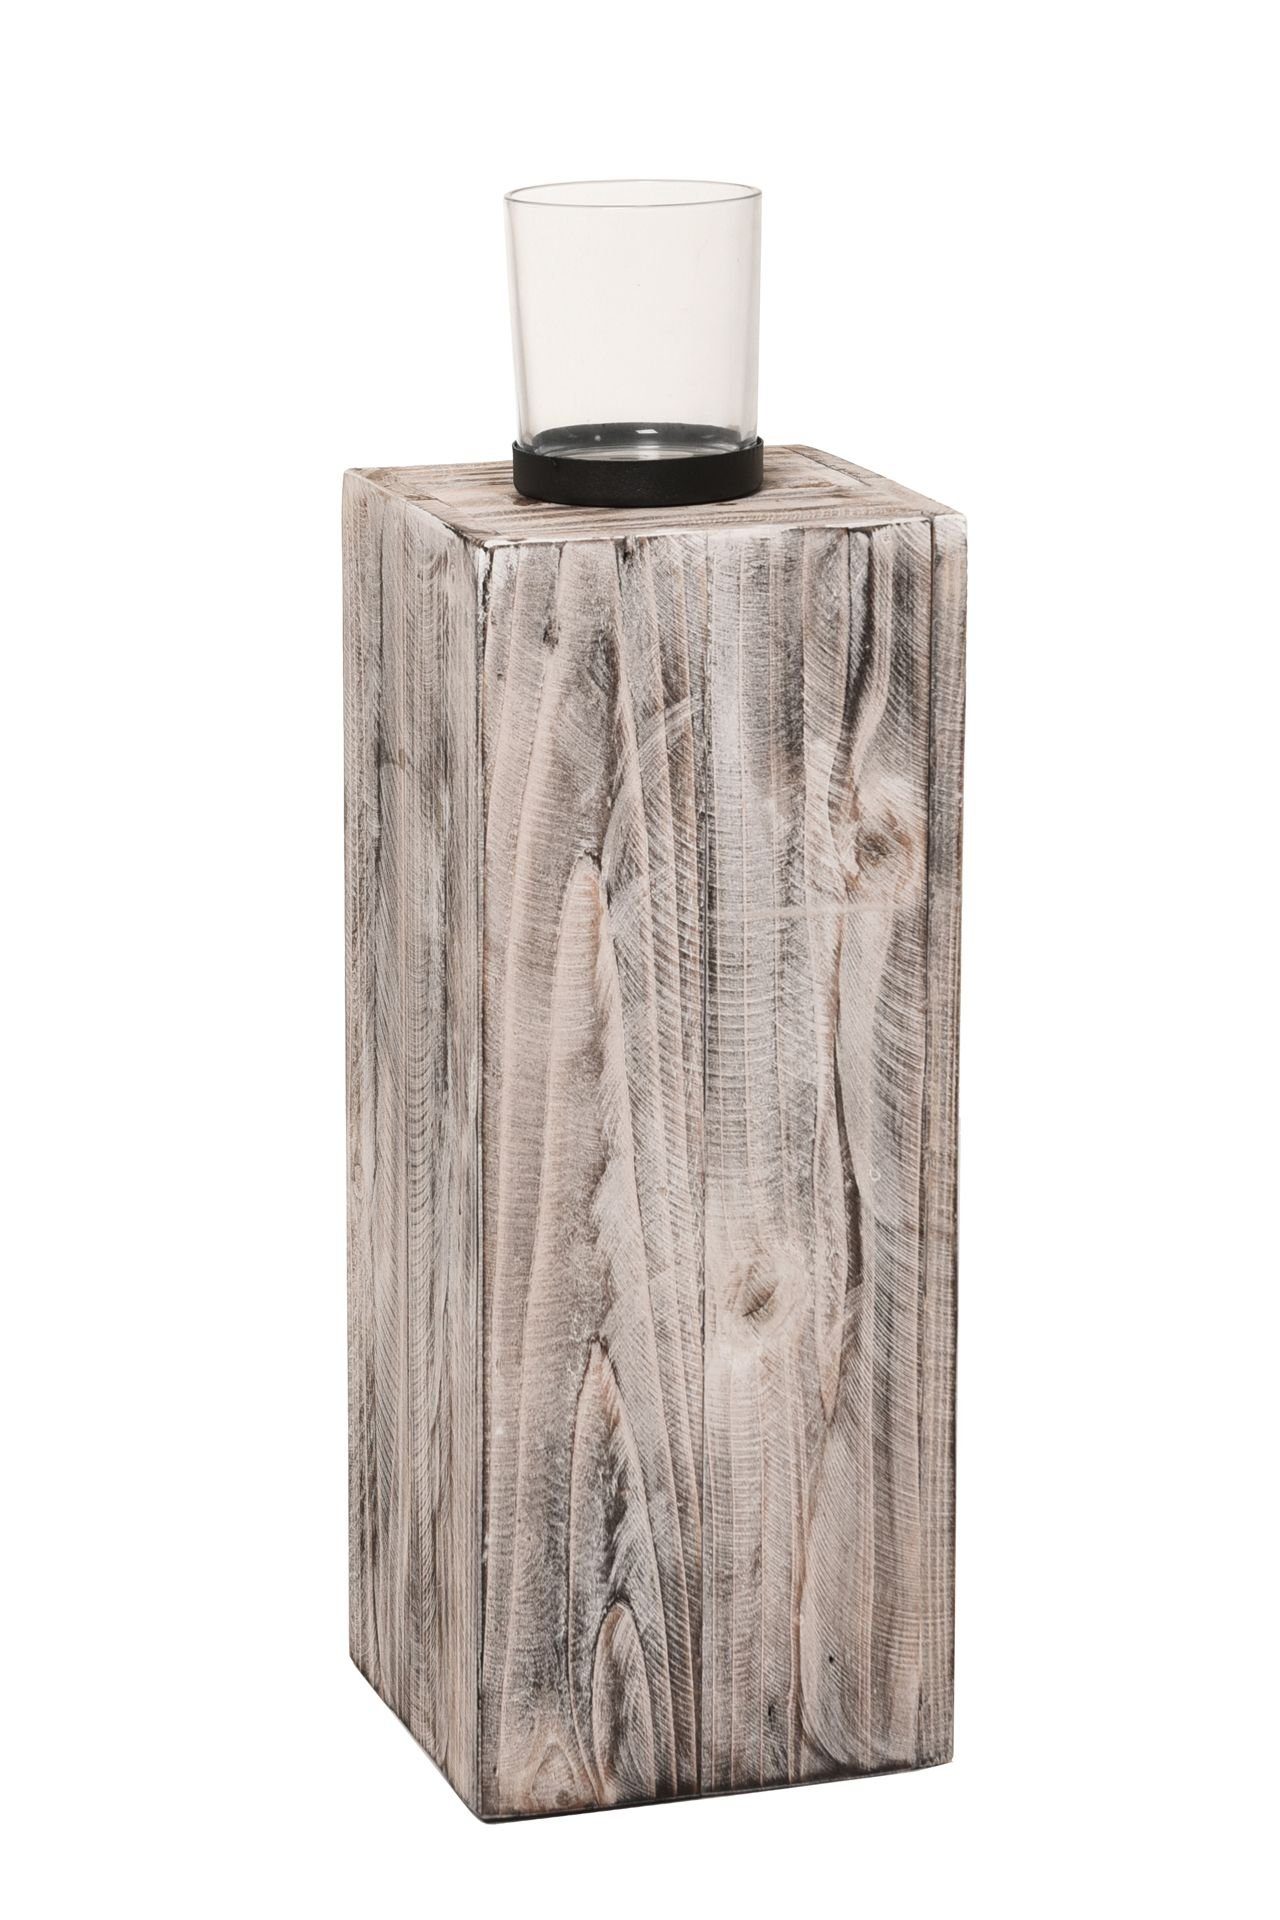 VIVANNO Bodenwindlicht Windlicht Säule Kerzenhalter Recycling Holz "Lumira", Shabby Chic | Windlichter